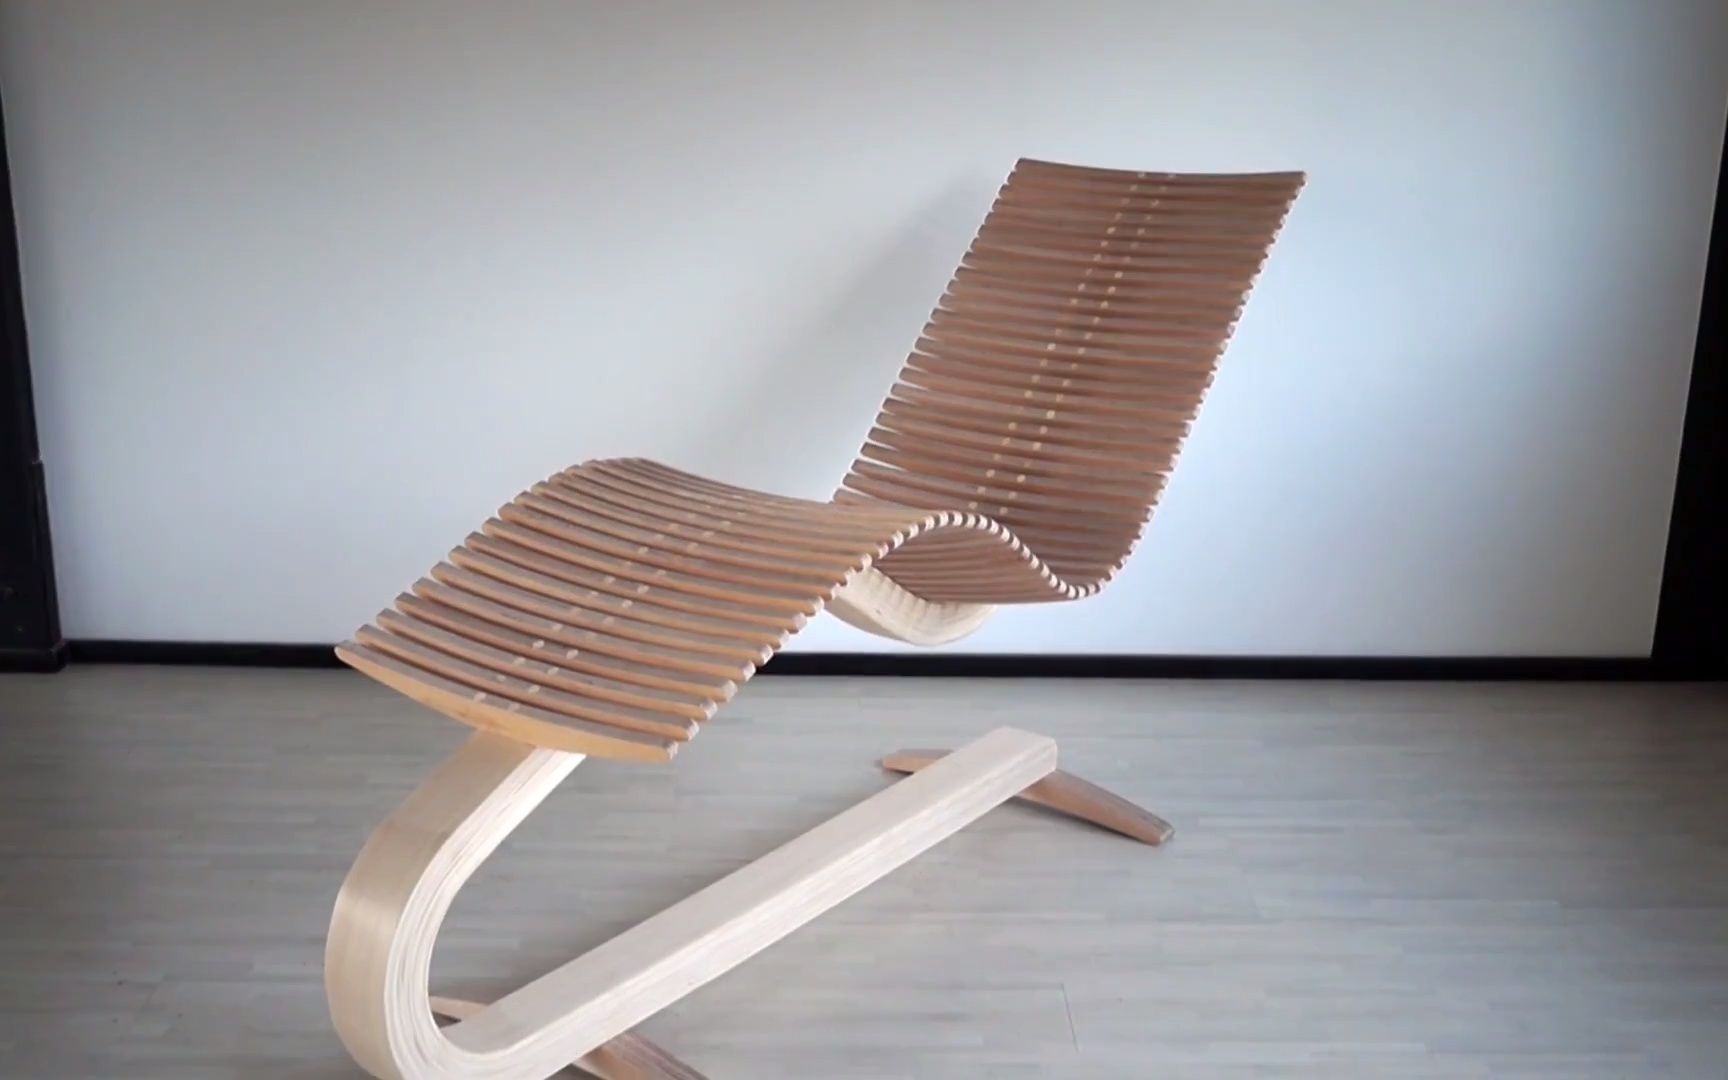 自制简易木质躺椅图片